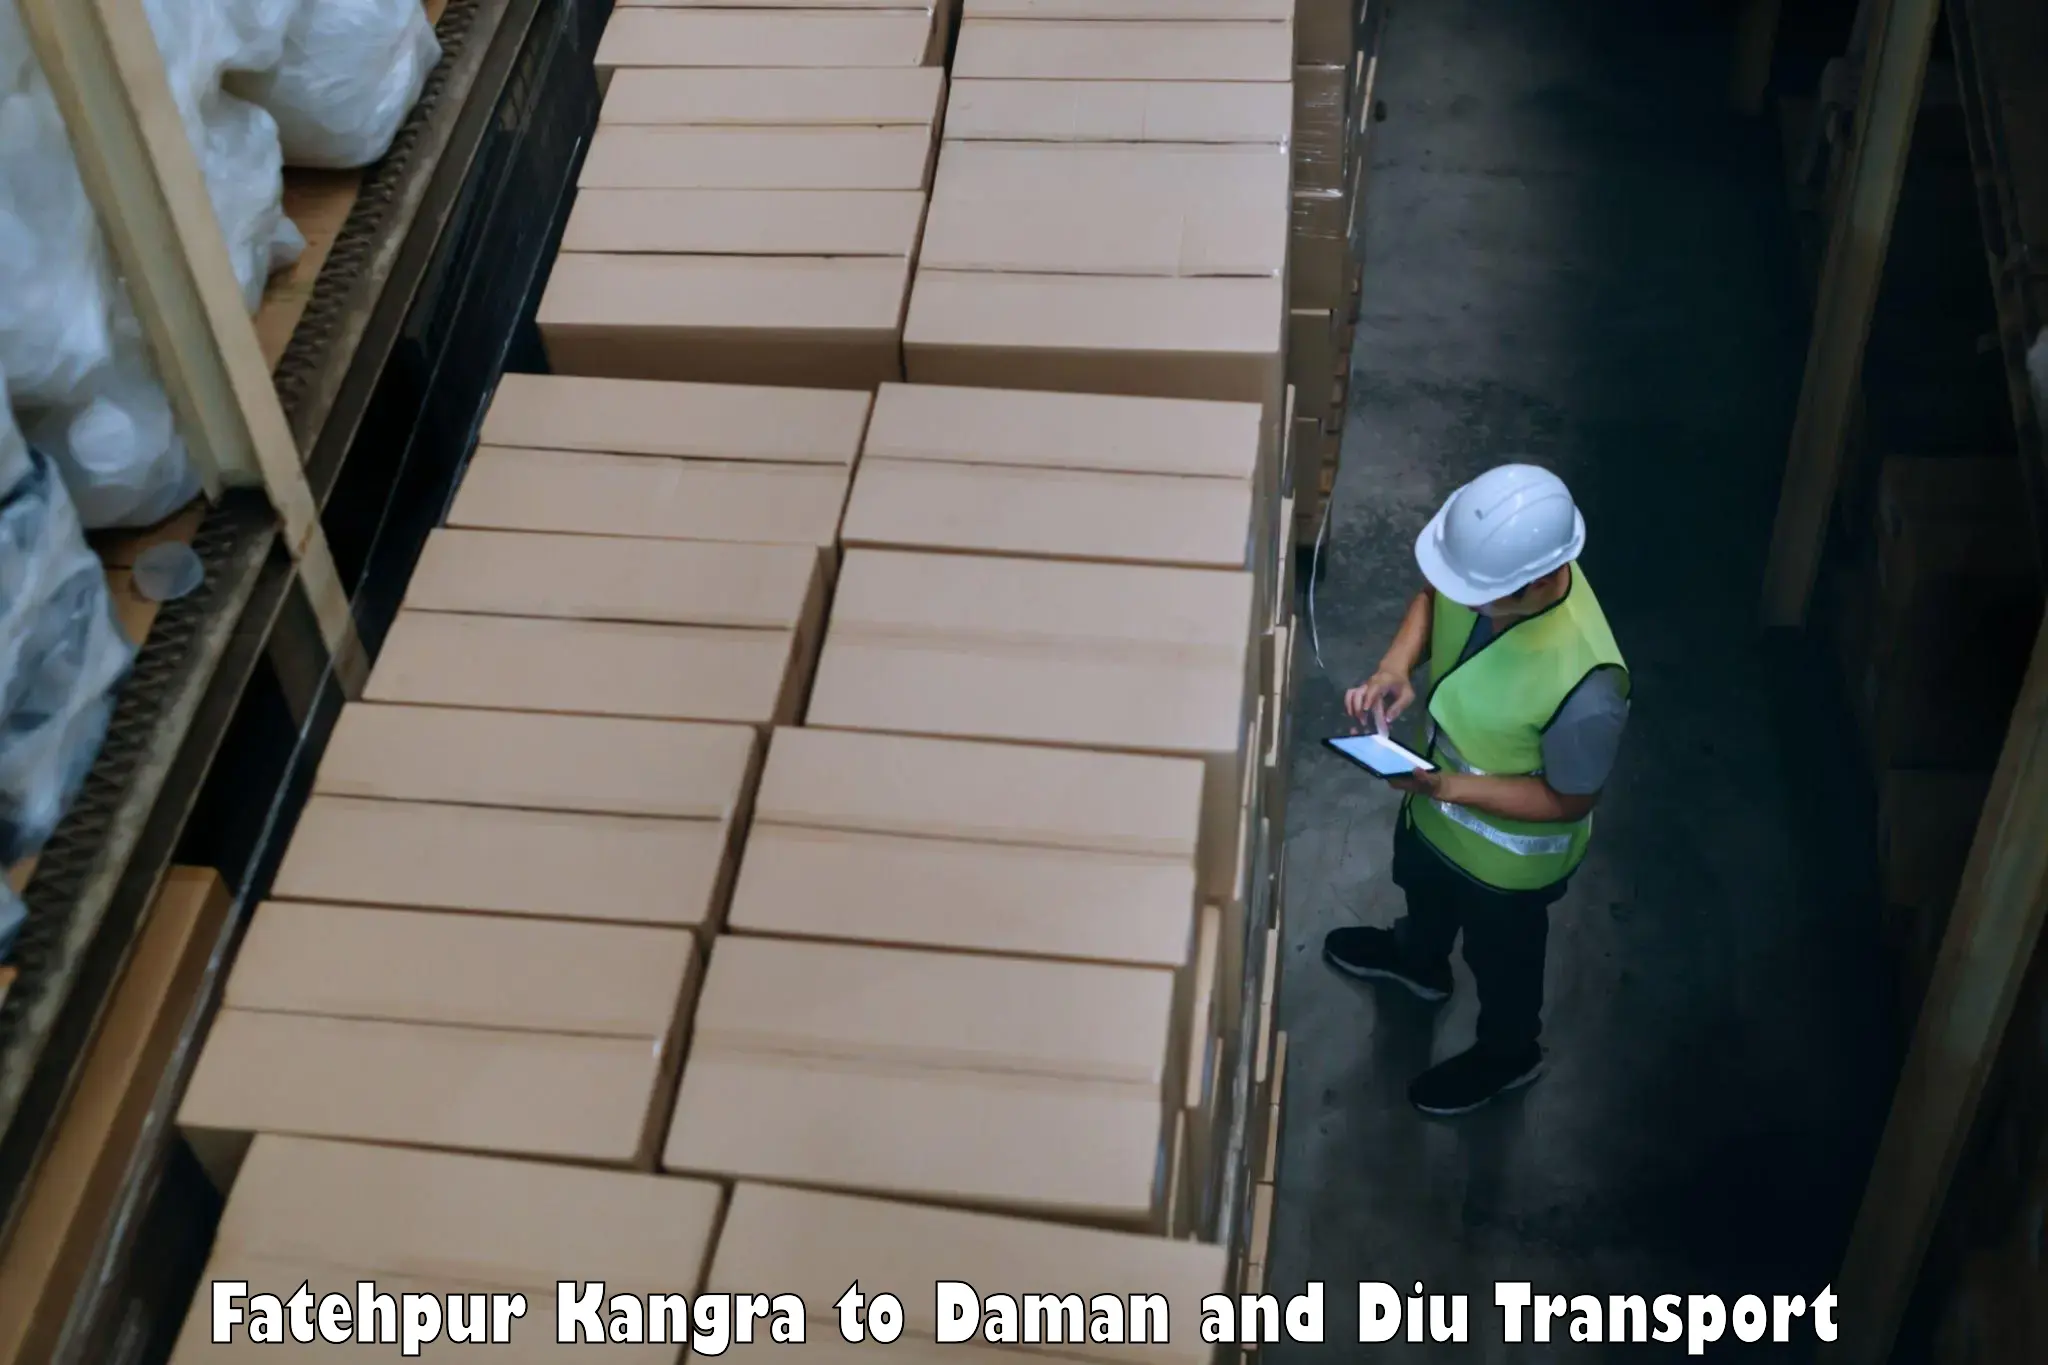 Furniture transport service Fatehpur Kangra to Daman and Diu